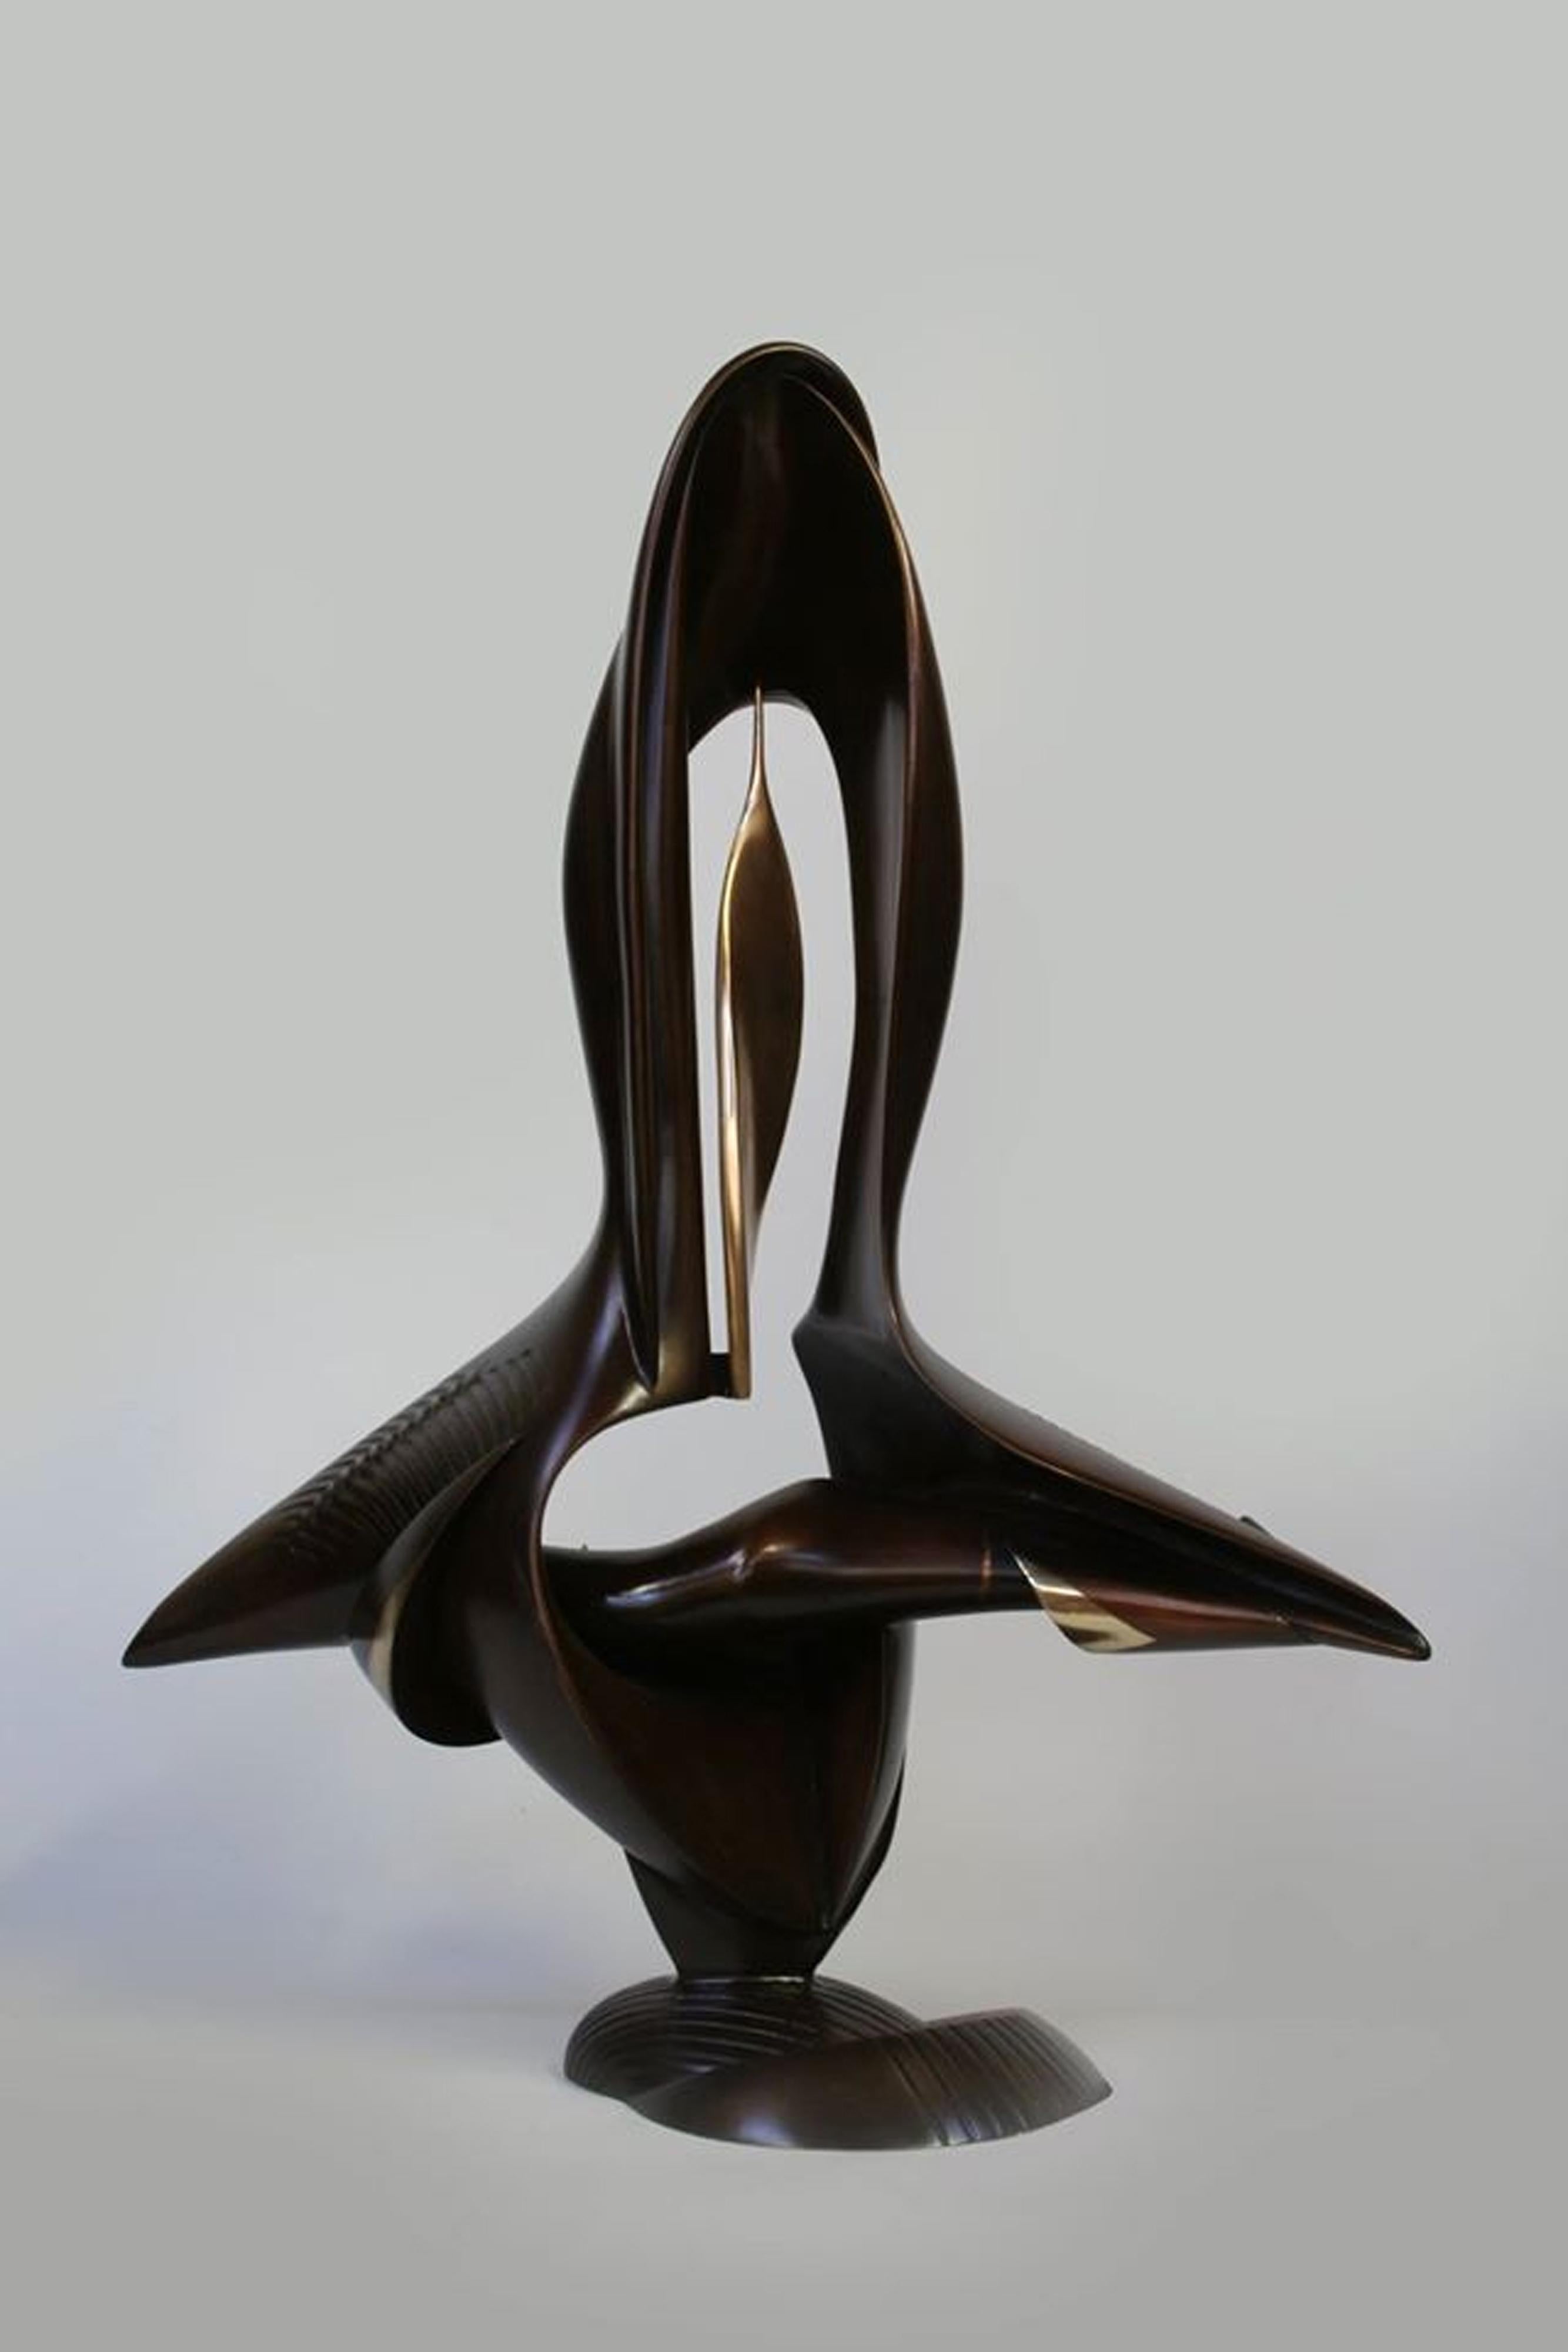 OASIS (Abstrakt), Sculpture, von Yevgeniy Prokopov